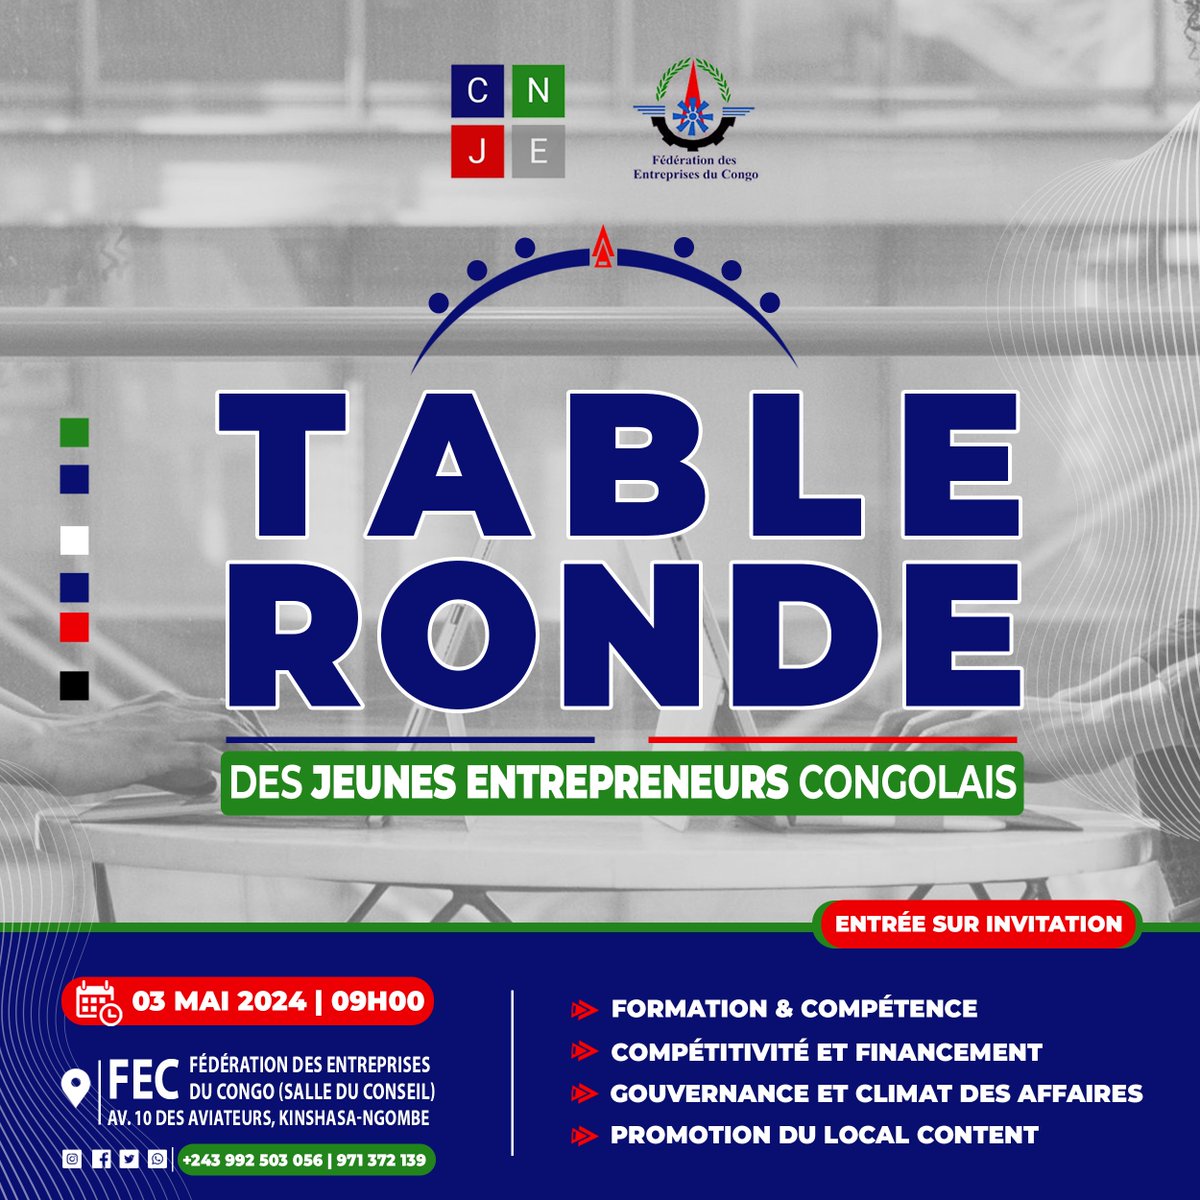 Ecouter, recueillir et identifier les principales problématiques qui freinent le développement d’un écosystème entrepreneurial favorable aux #jeunes en #RDC.

Tel est l'objectif 🎯 de la Table Ronde organisée par la Commission Nationale Jeunes Entrepreneurs FEC « CNJE » ce…